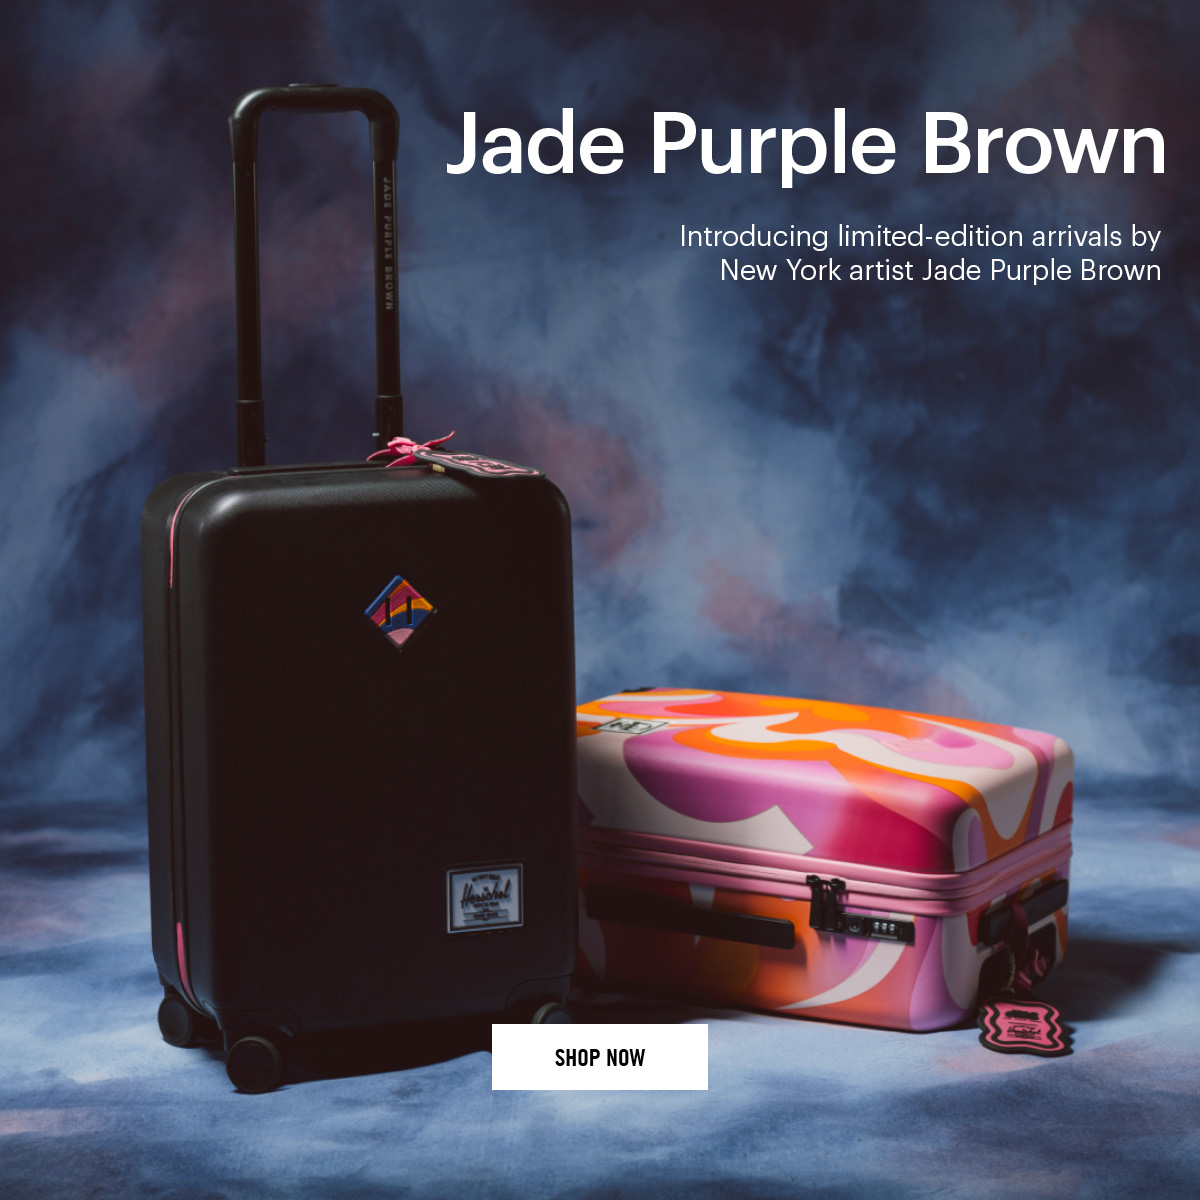 Jade Purple Brown